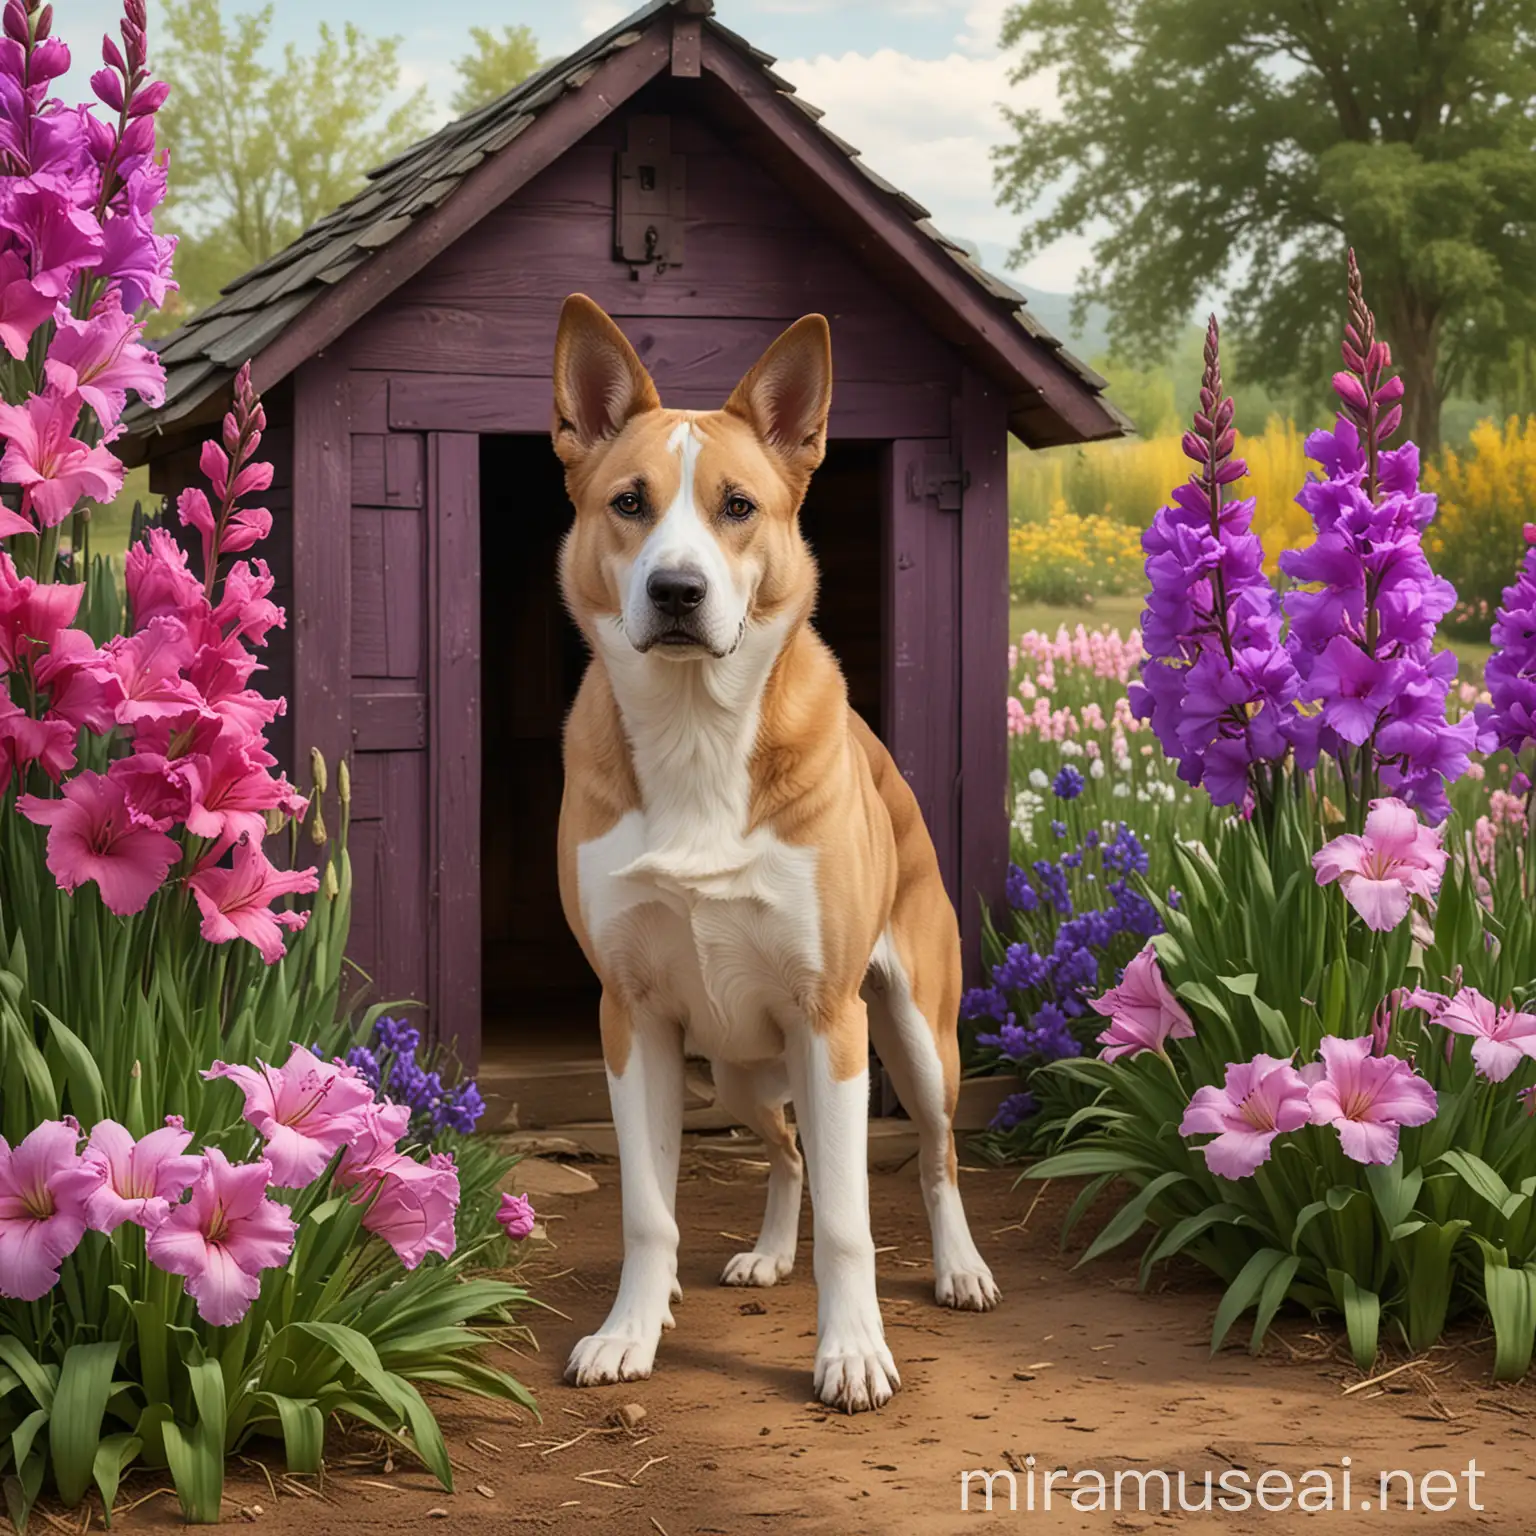 تصویر دیجیتال ارت سگی زیبا که در مزرعه ای کتار کلبه سگ ها ایستاده واطراف کلبه کل های بنفش گلایور خودنمایی میکند .تصویر فرا واقعی باتوجه به پترن های رنگی گرم وسرد برام بساز بسیار تک ومنحصر به فرد